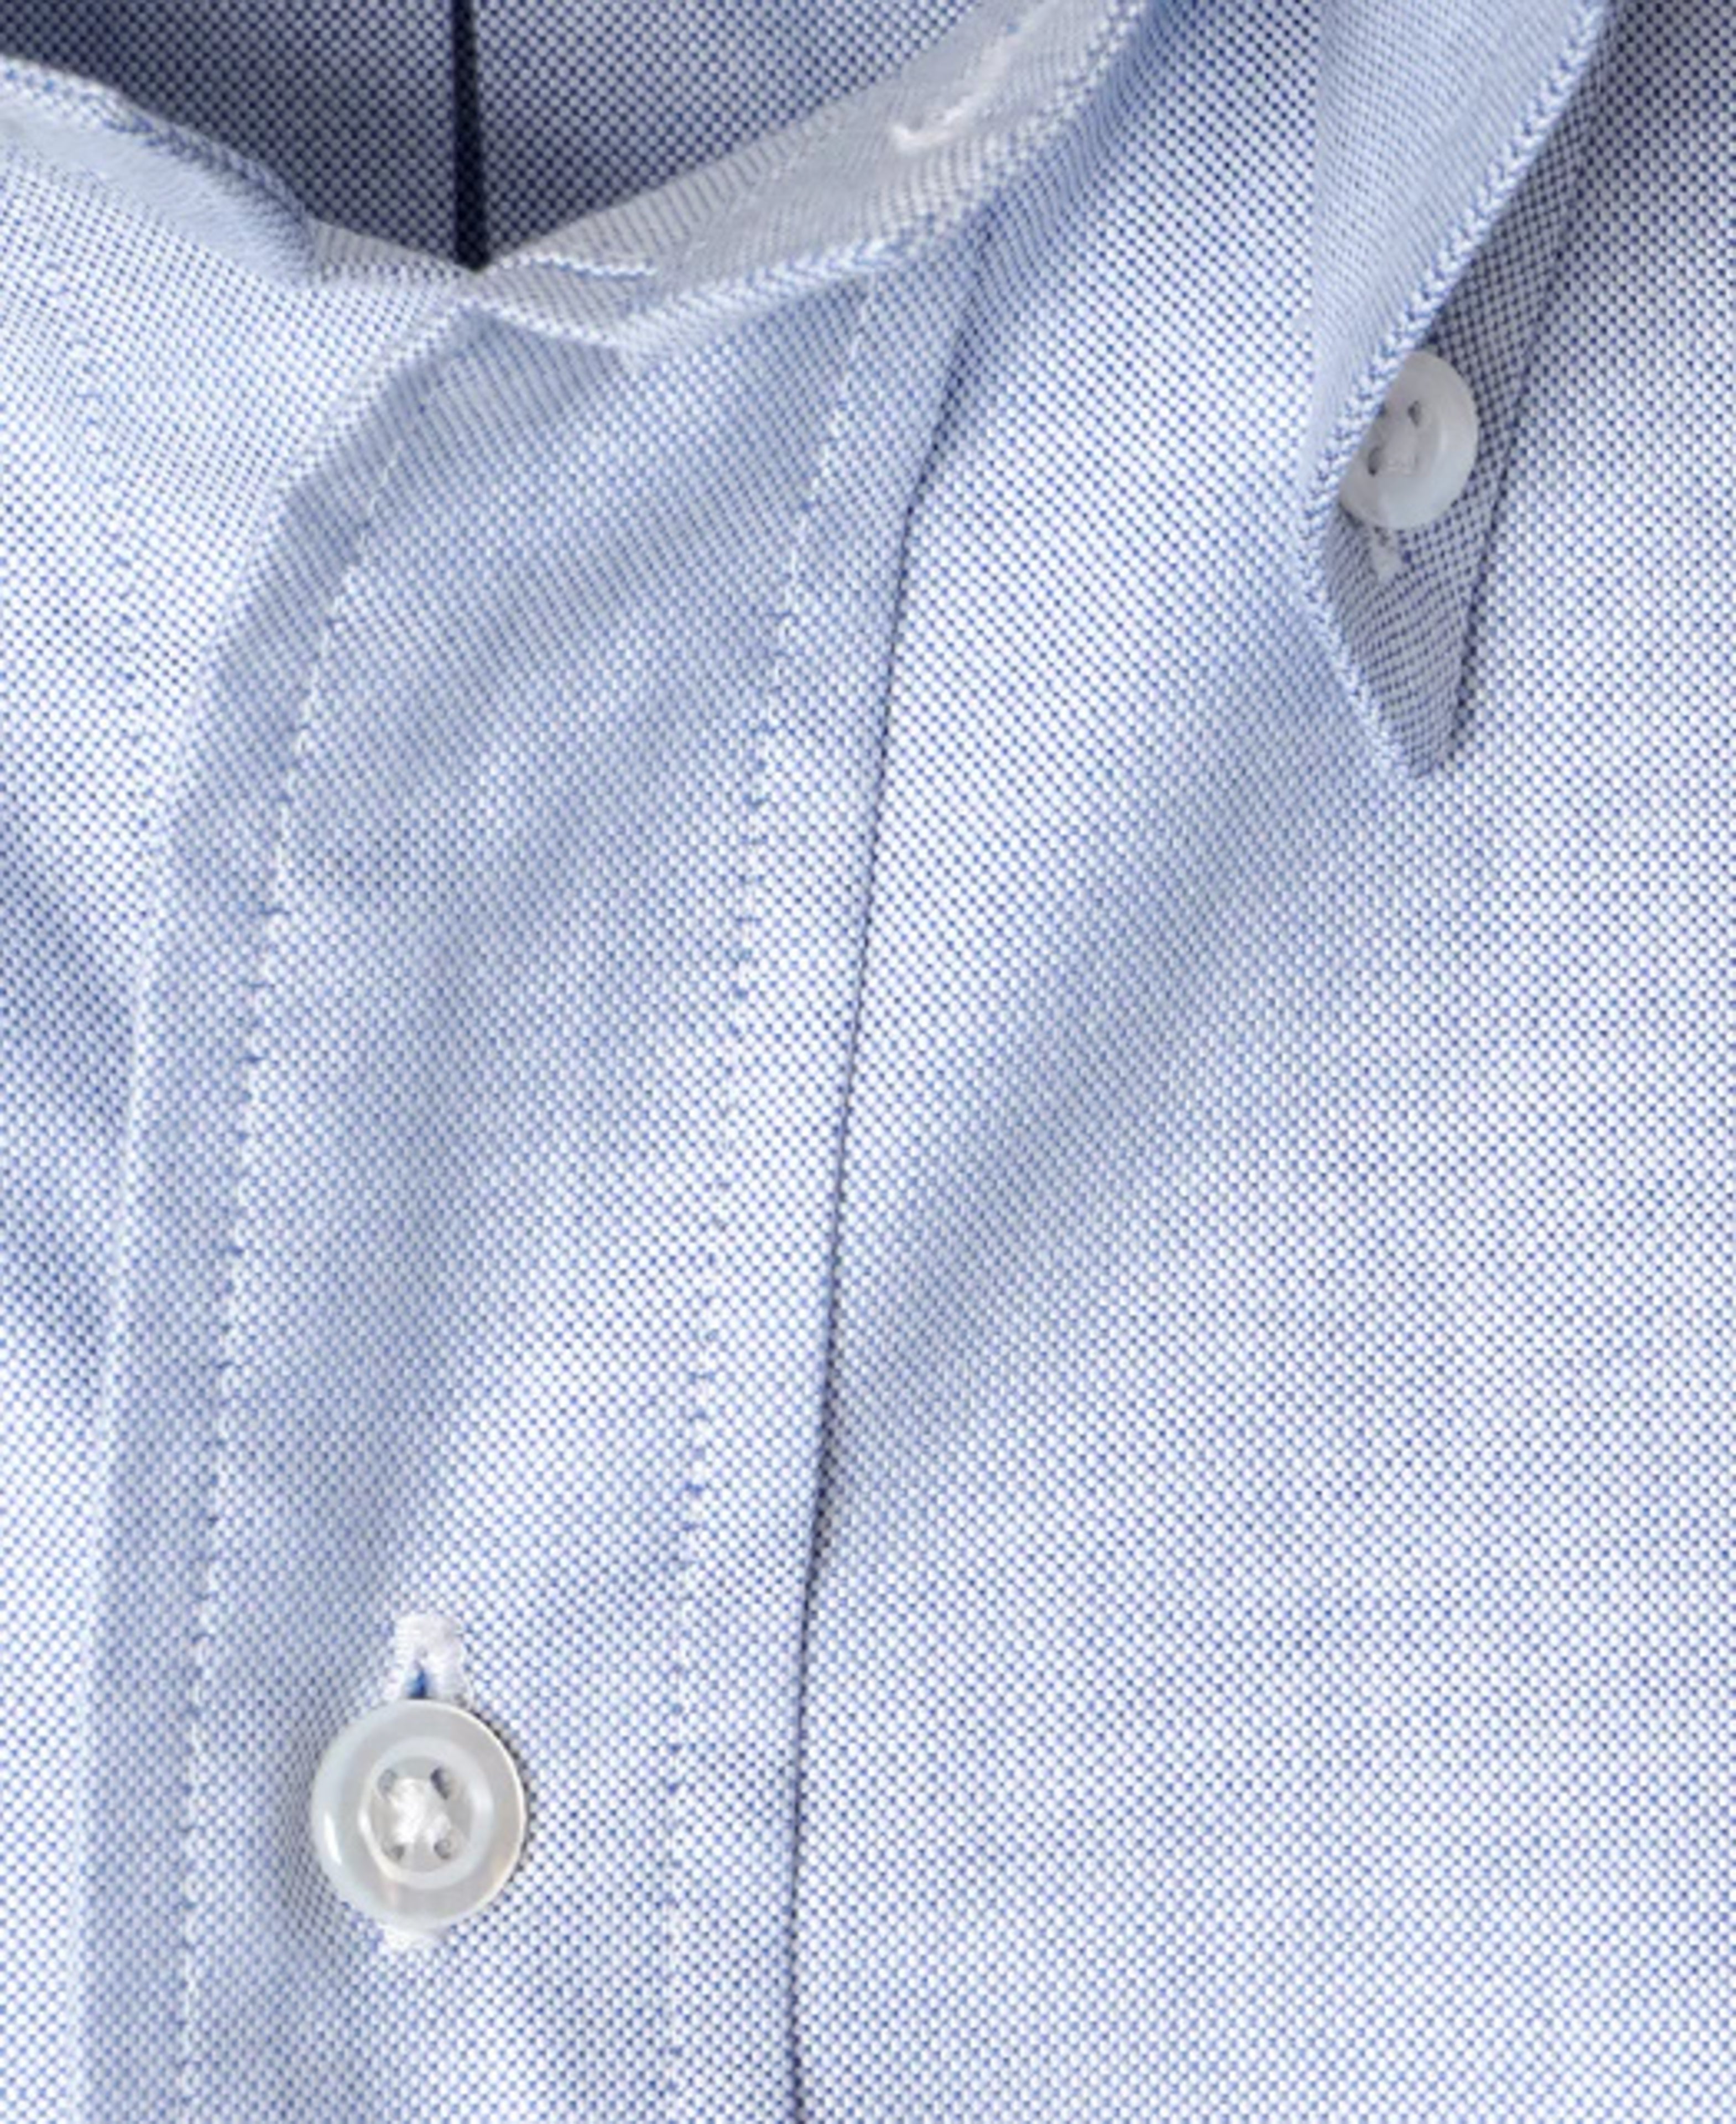 Ametora Button Down Oxford Shirt YNOS2421 | Blue